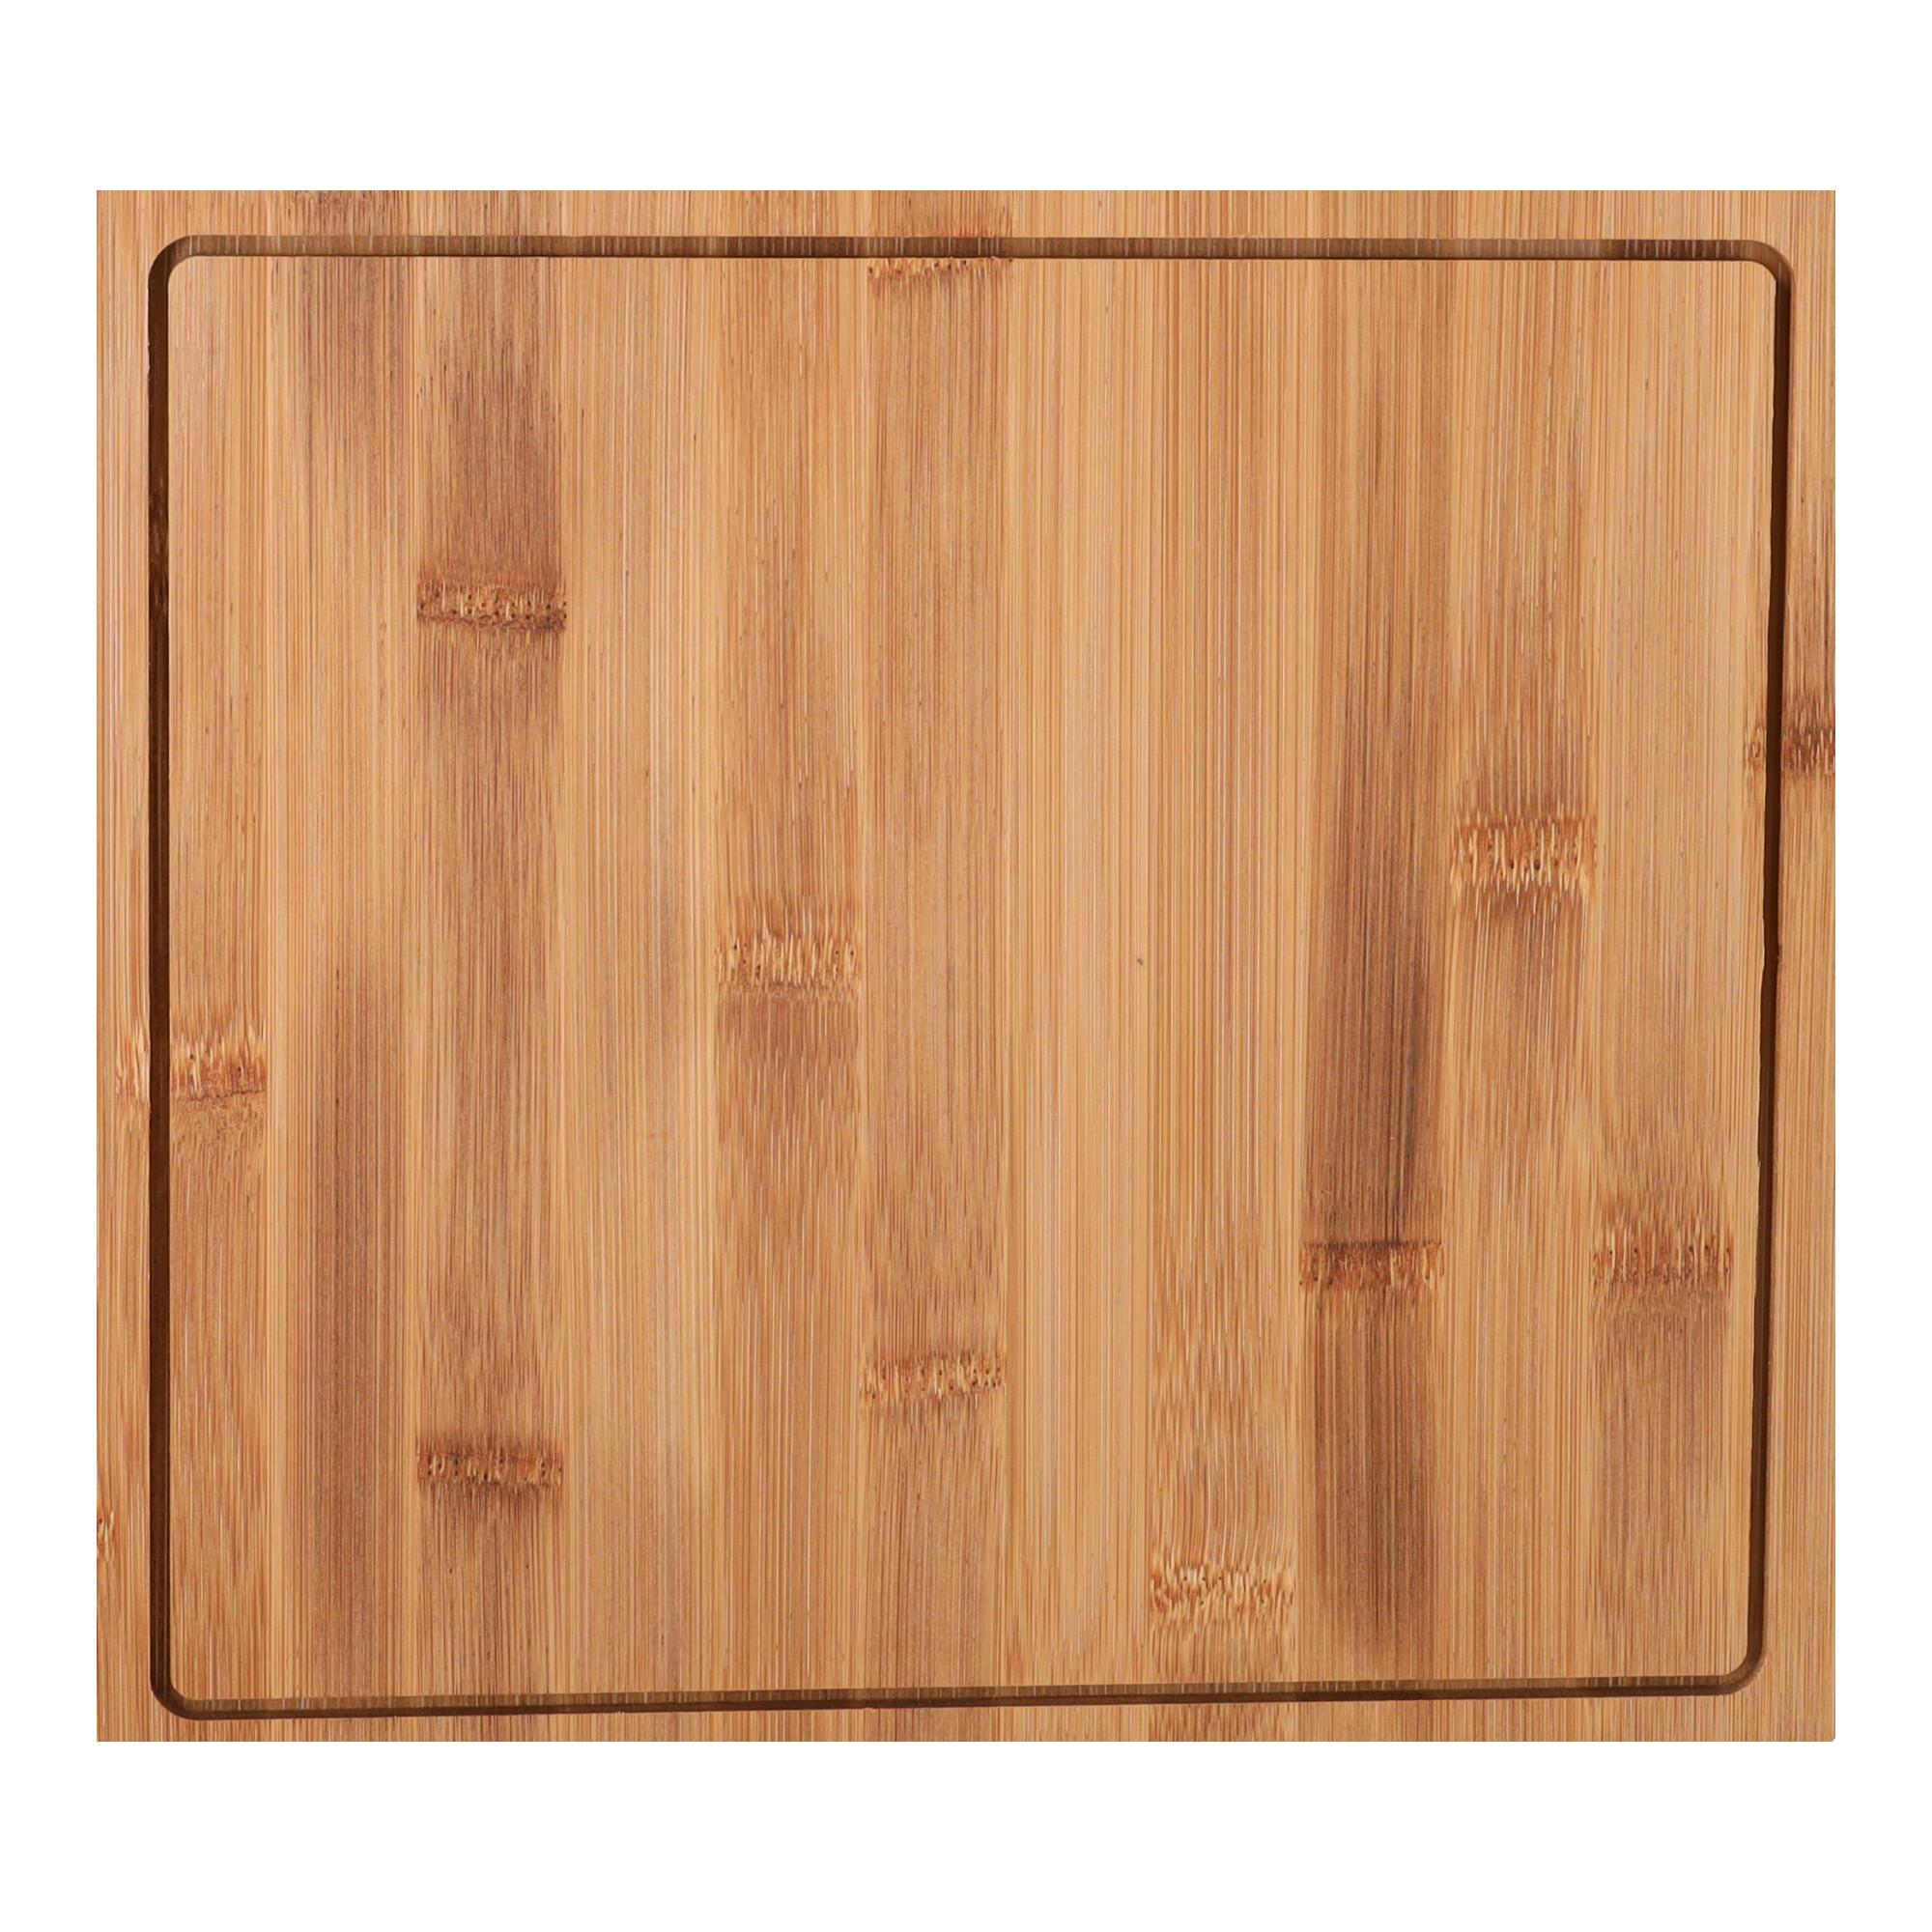 Drewniana deska do pizzy - kwadratowa, duża